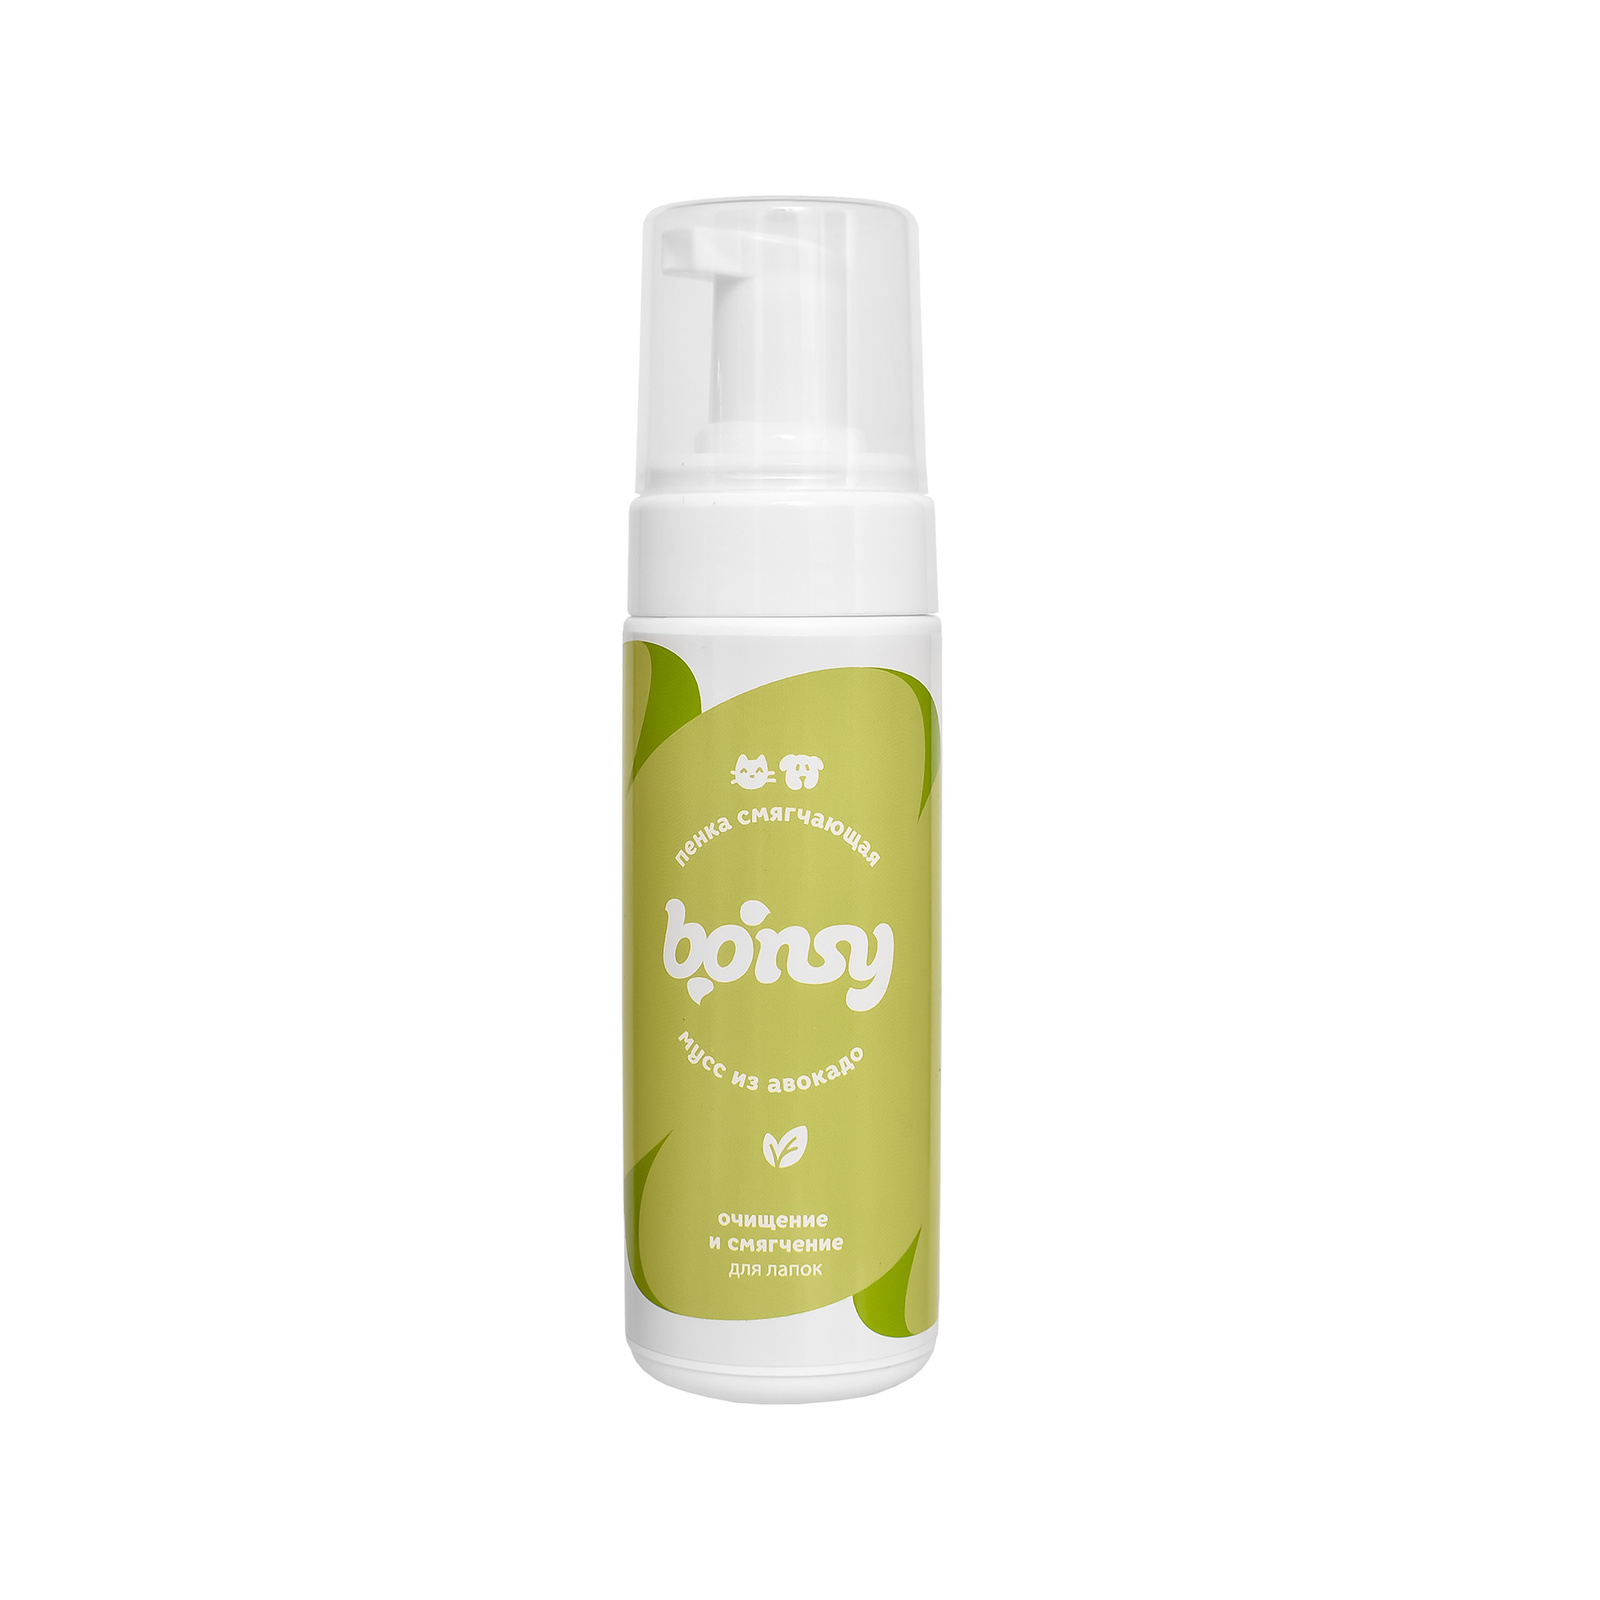 Bonsy Bonsy пенка для лап: очищение и смягчение с ароматом Мусс из авокадо (150 мл) цена и фото